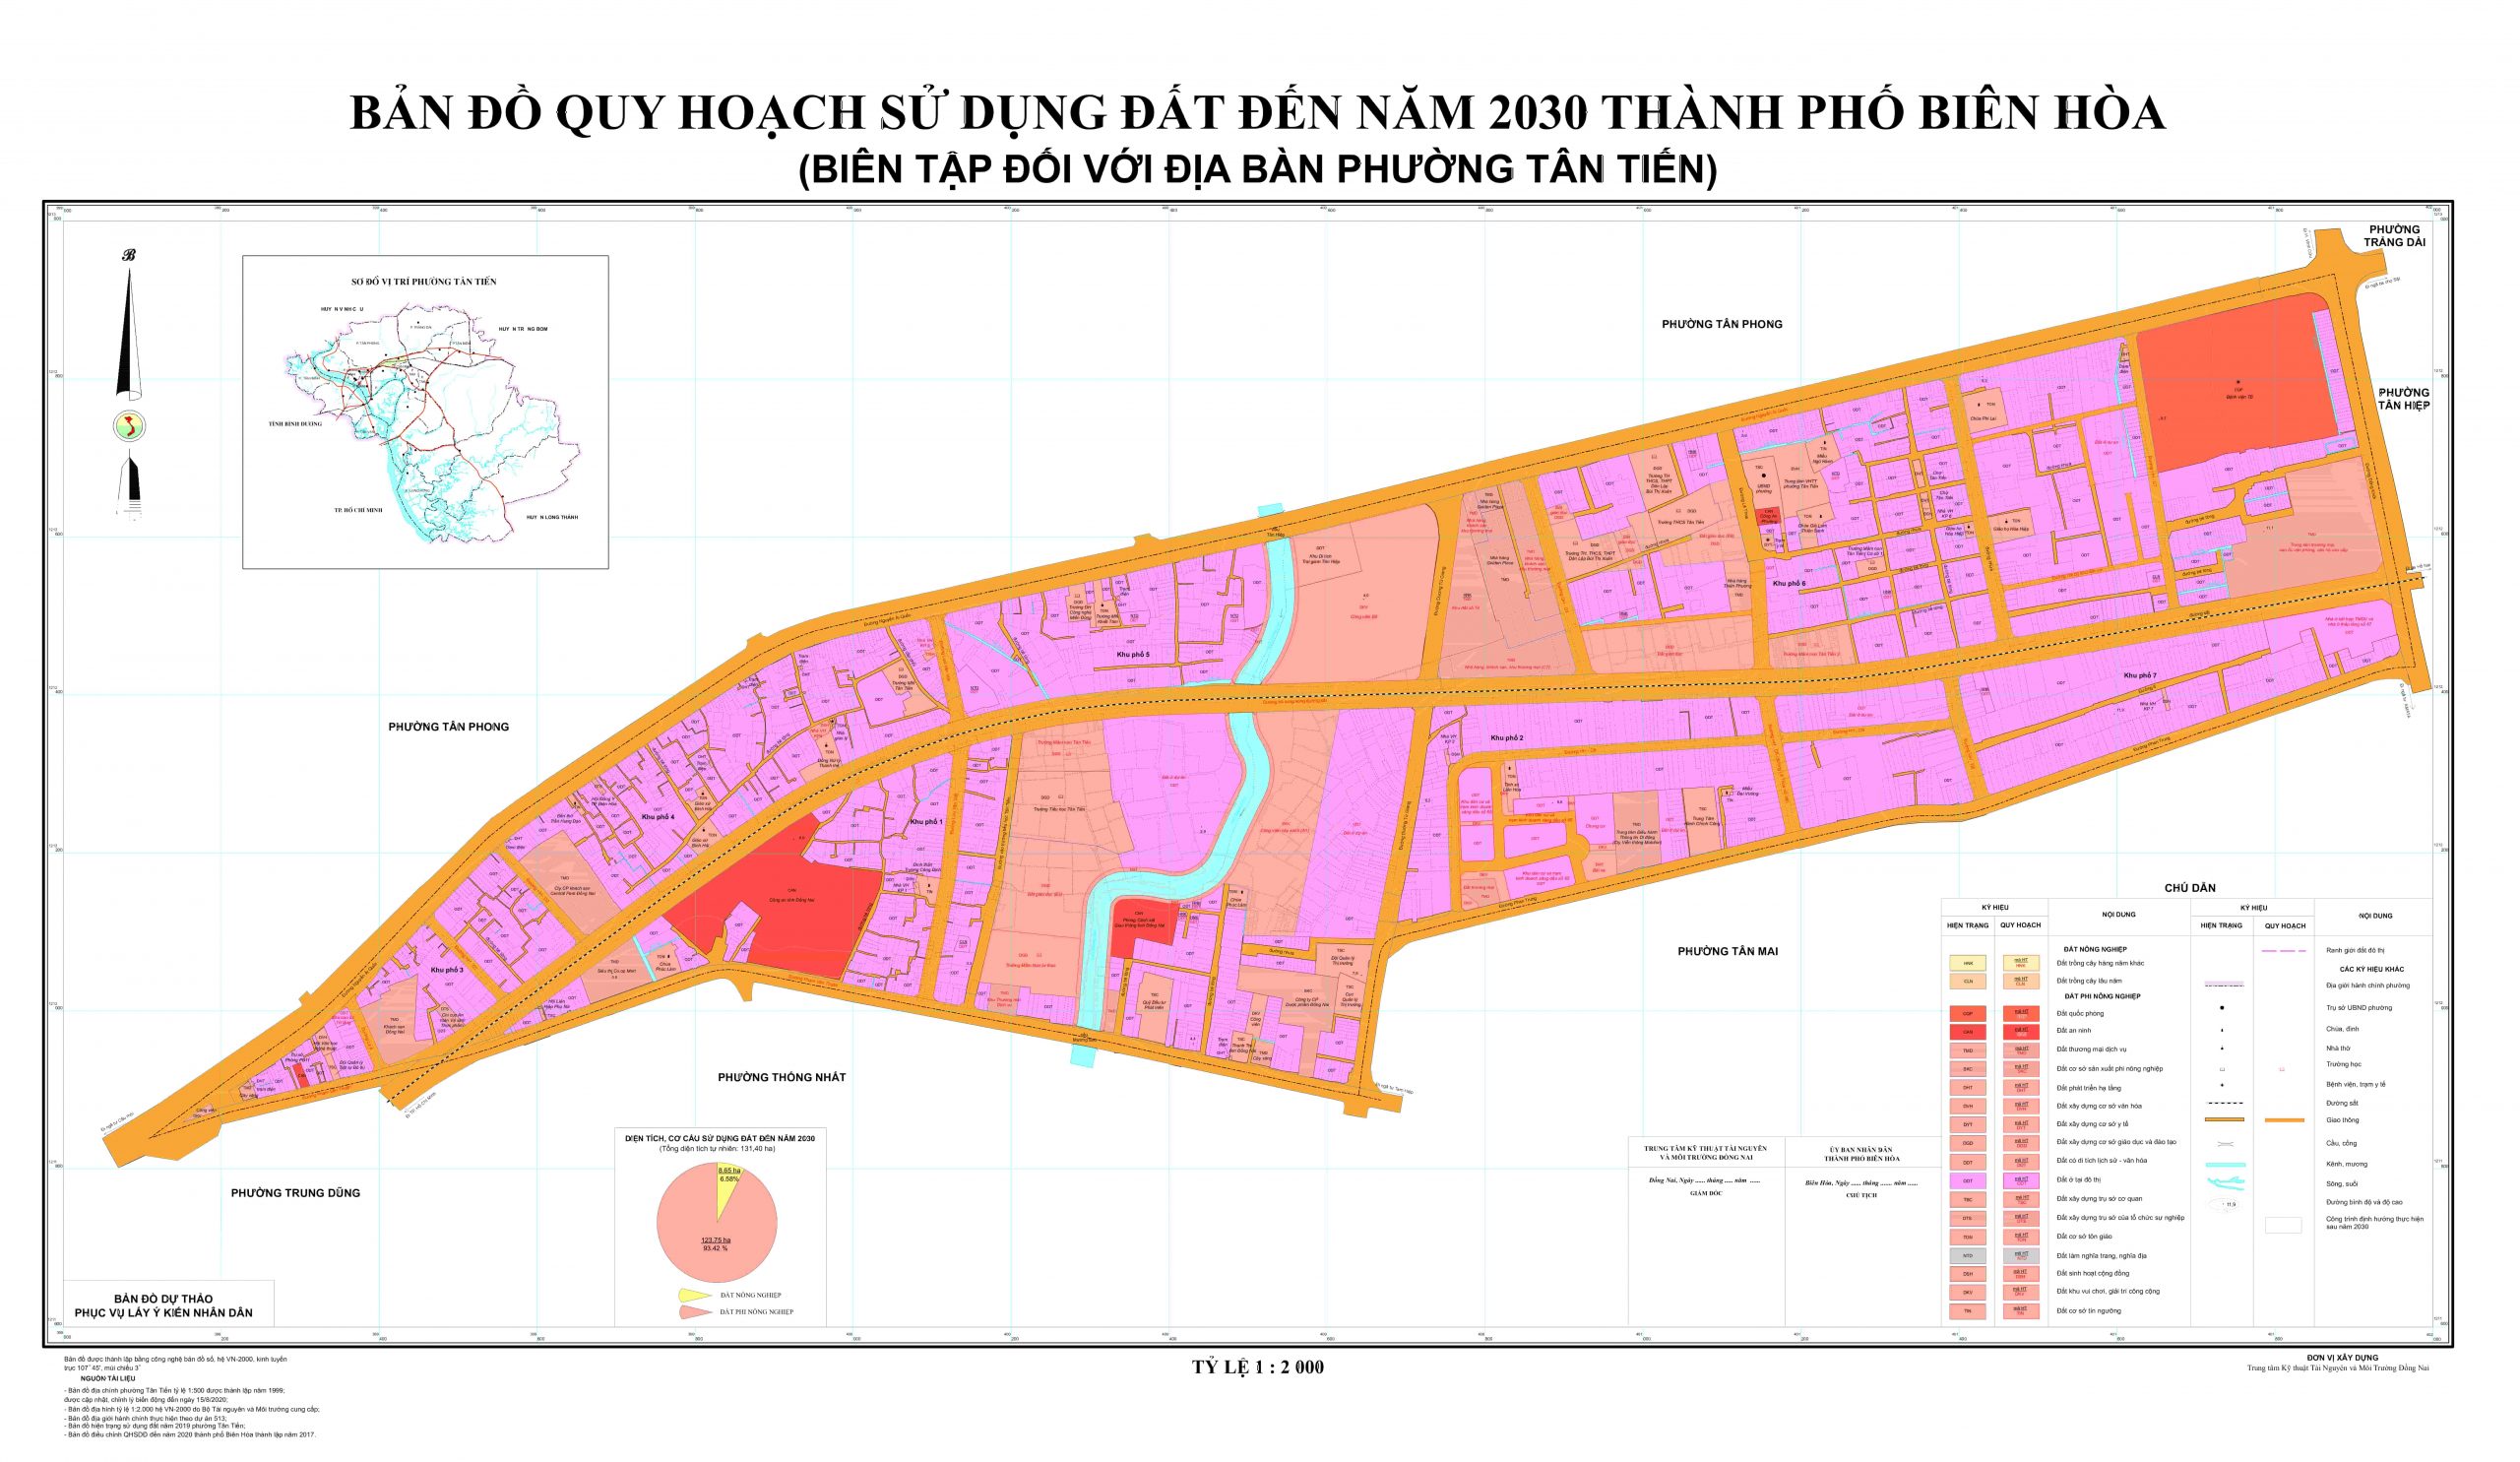 Bản đồ quy hoạch phường Tân Tiến cập nhật mới nhất với đầy đủ các thông tin về cơ sở hạ tầng, kênh mương và các địa điểm công cộng. Đừng bỏ lỡ cơ hội xem hình ảnh để biết thêm về quy hoạch phát triển phường Tân Tiến.